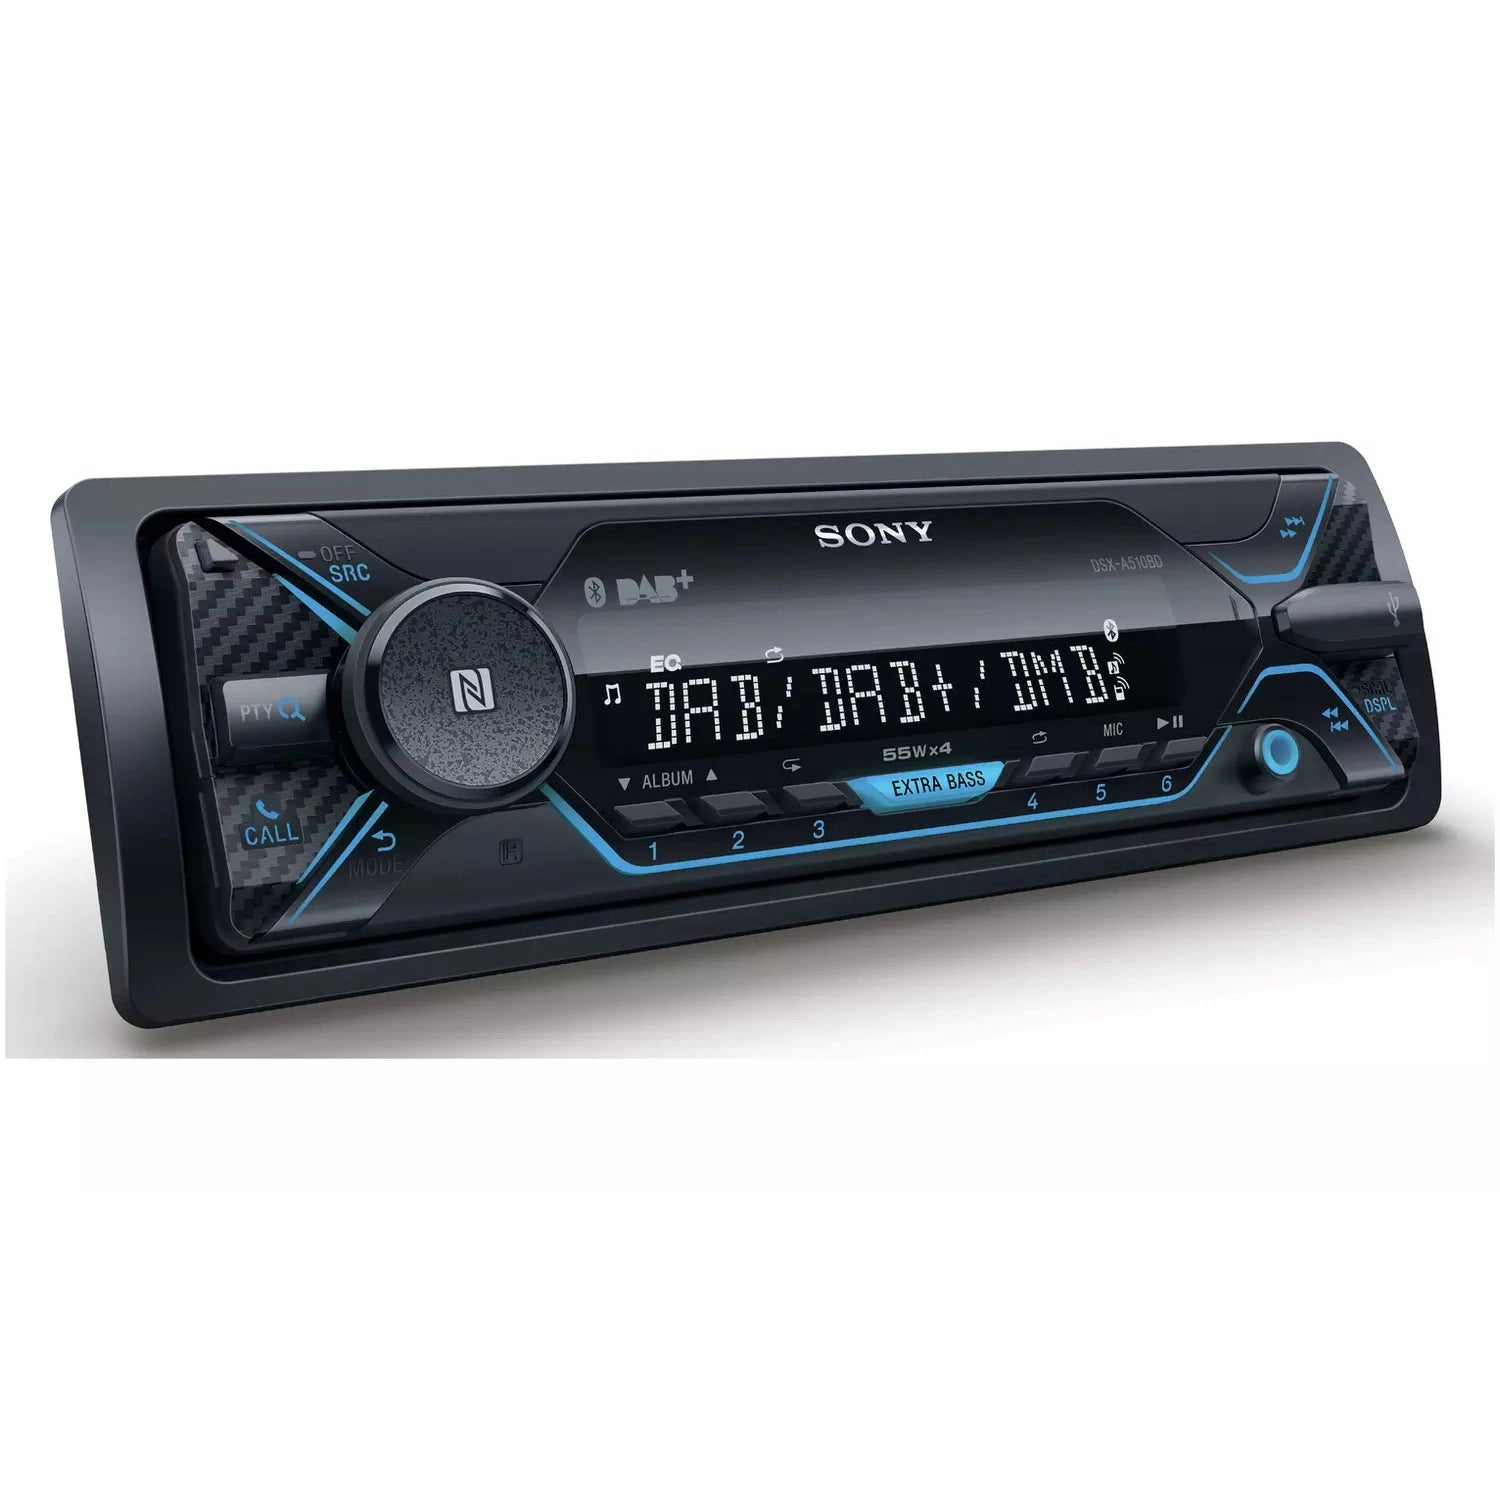 Sony DSX-A510BD Car Stereo - Black